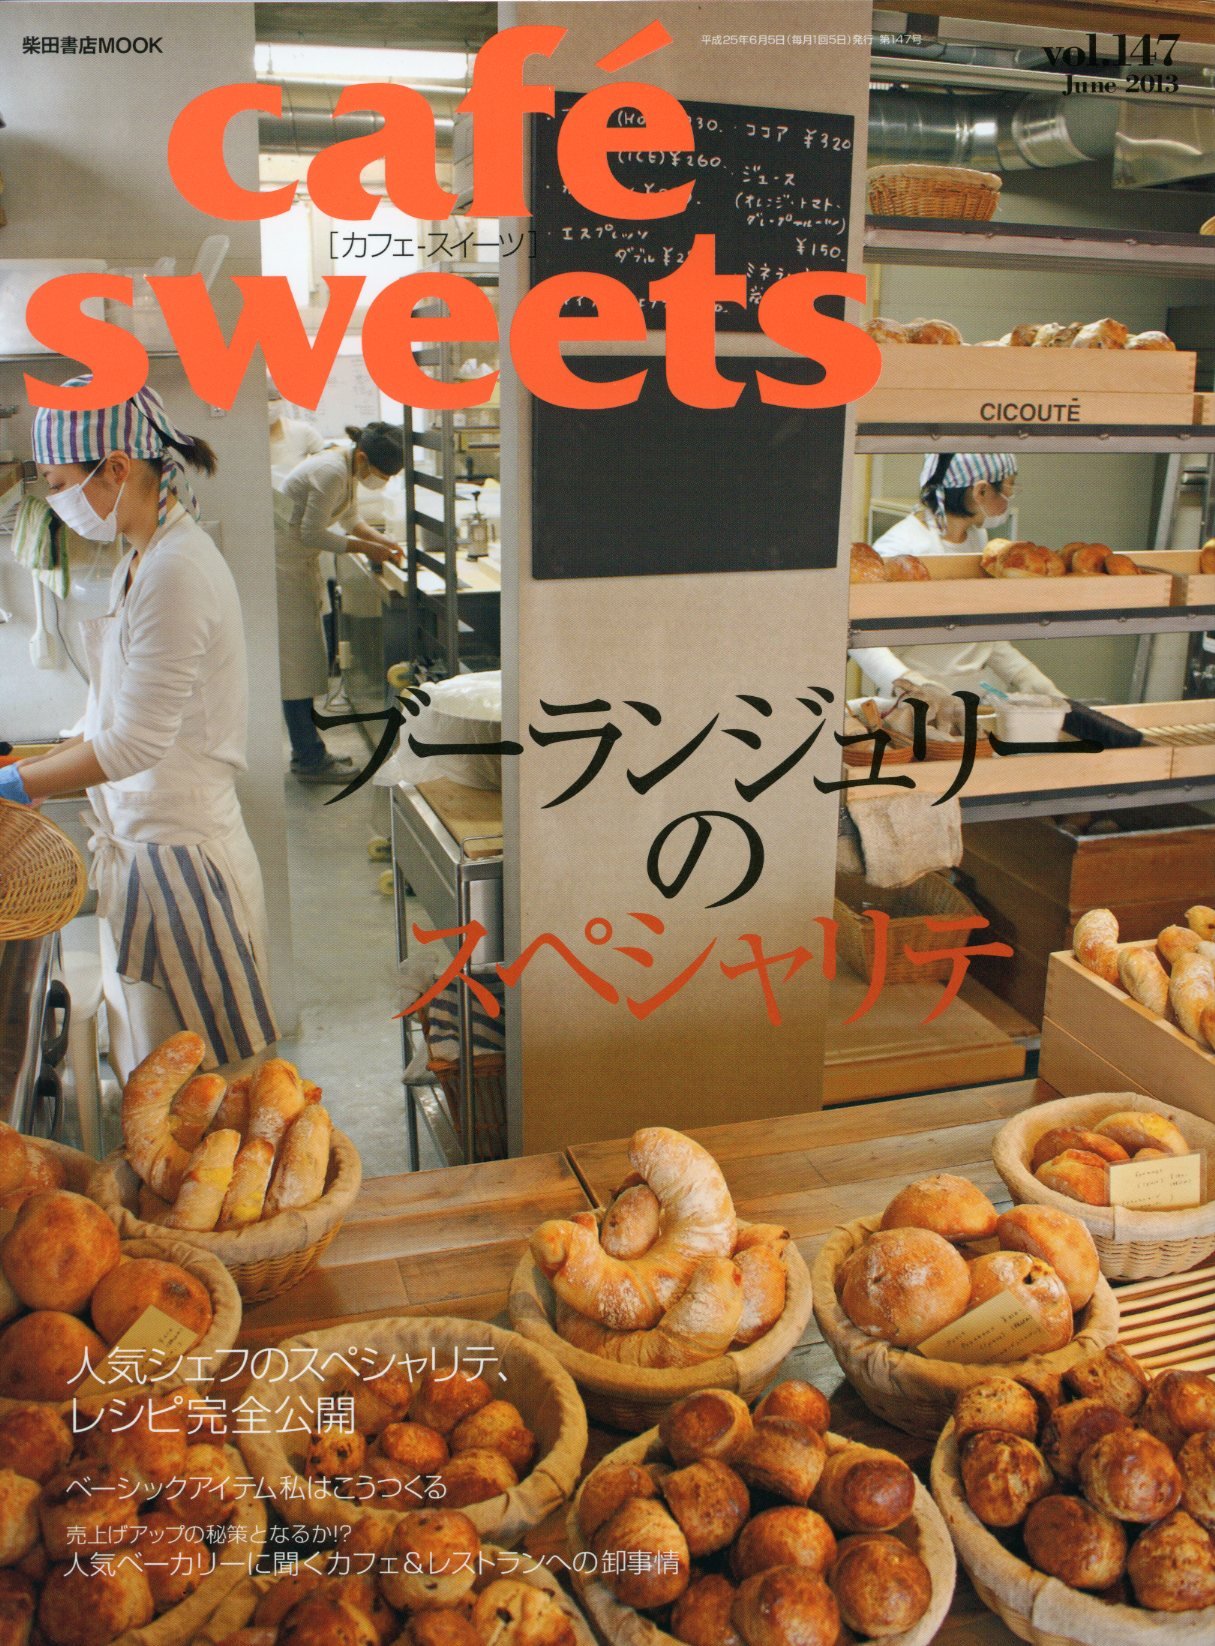 良書網 cafe sweet vol.147 出版社: 柴田書店 Code/ISBN: 9784388808090